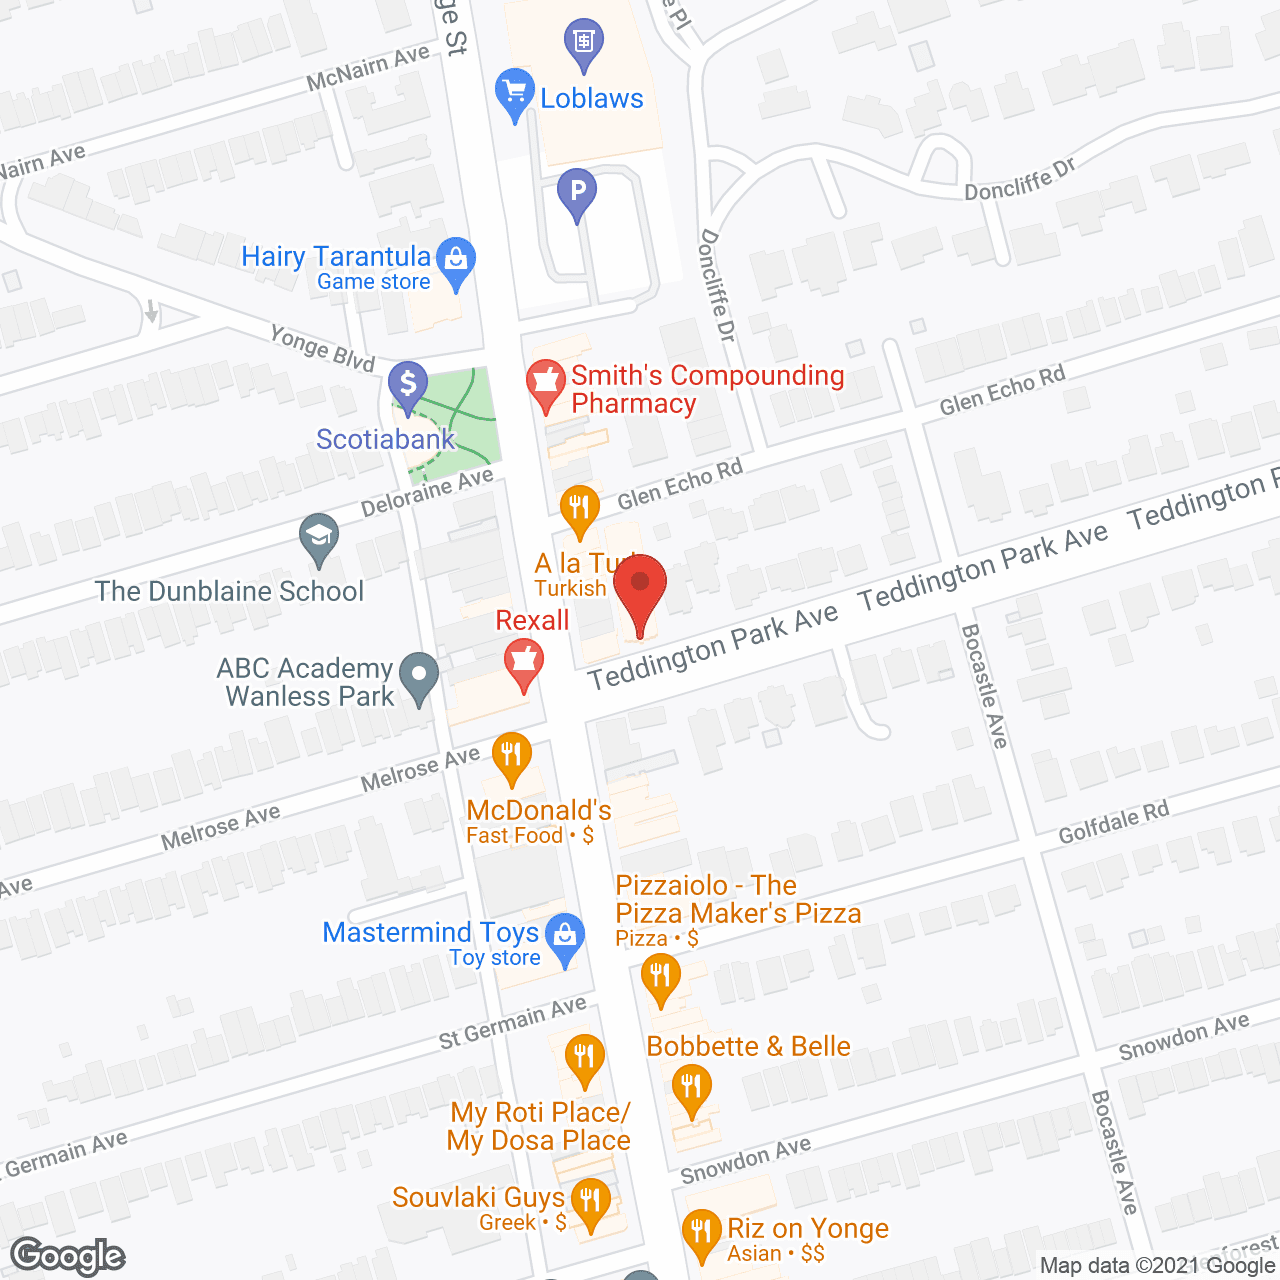 Four Teddington Park Ave in google map